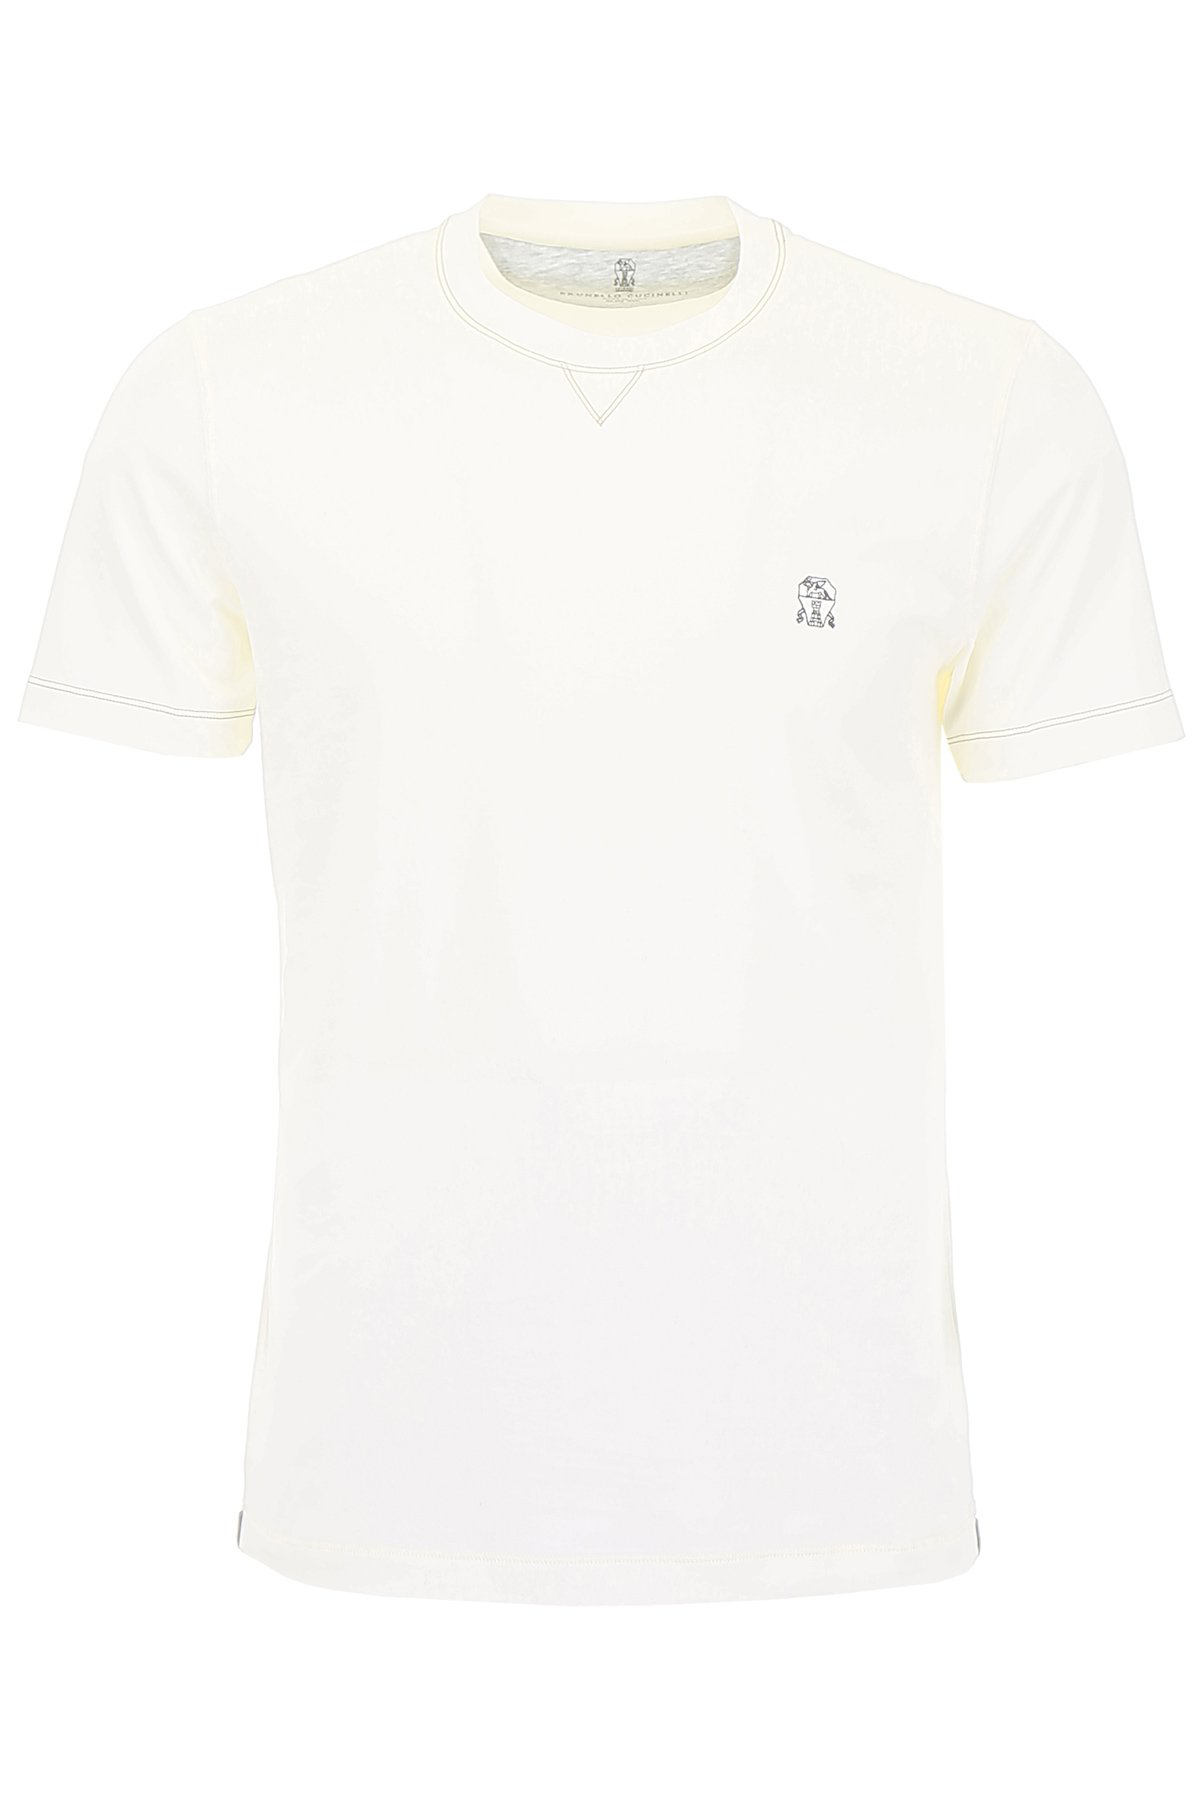 Brunello Cucinelli Logo T In White | ModeSens